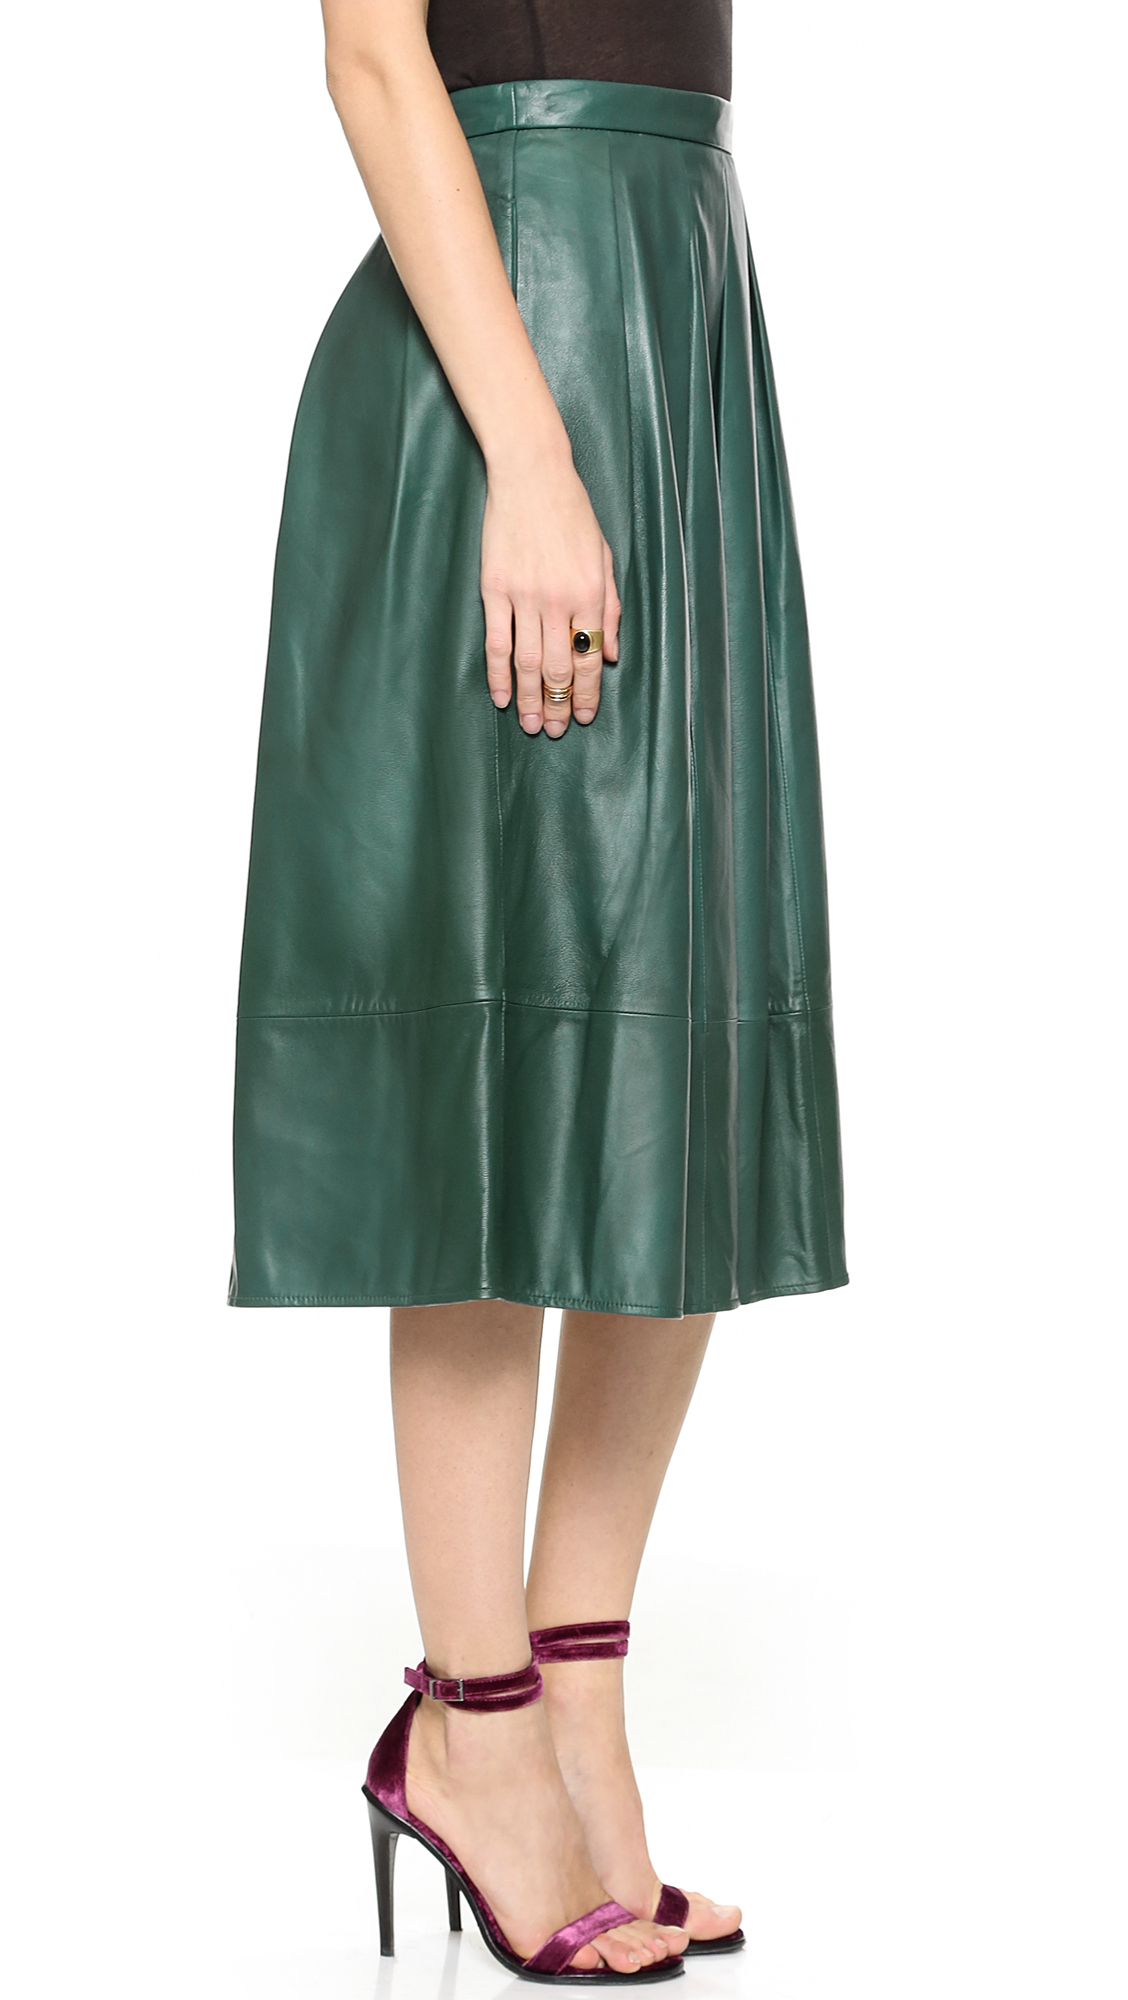 Lyst - Tibi Leather Full Skirt - Emerald in Green